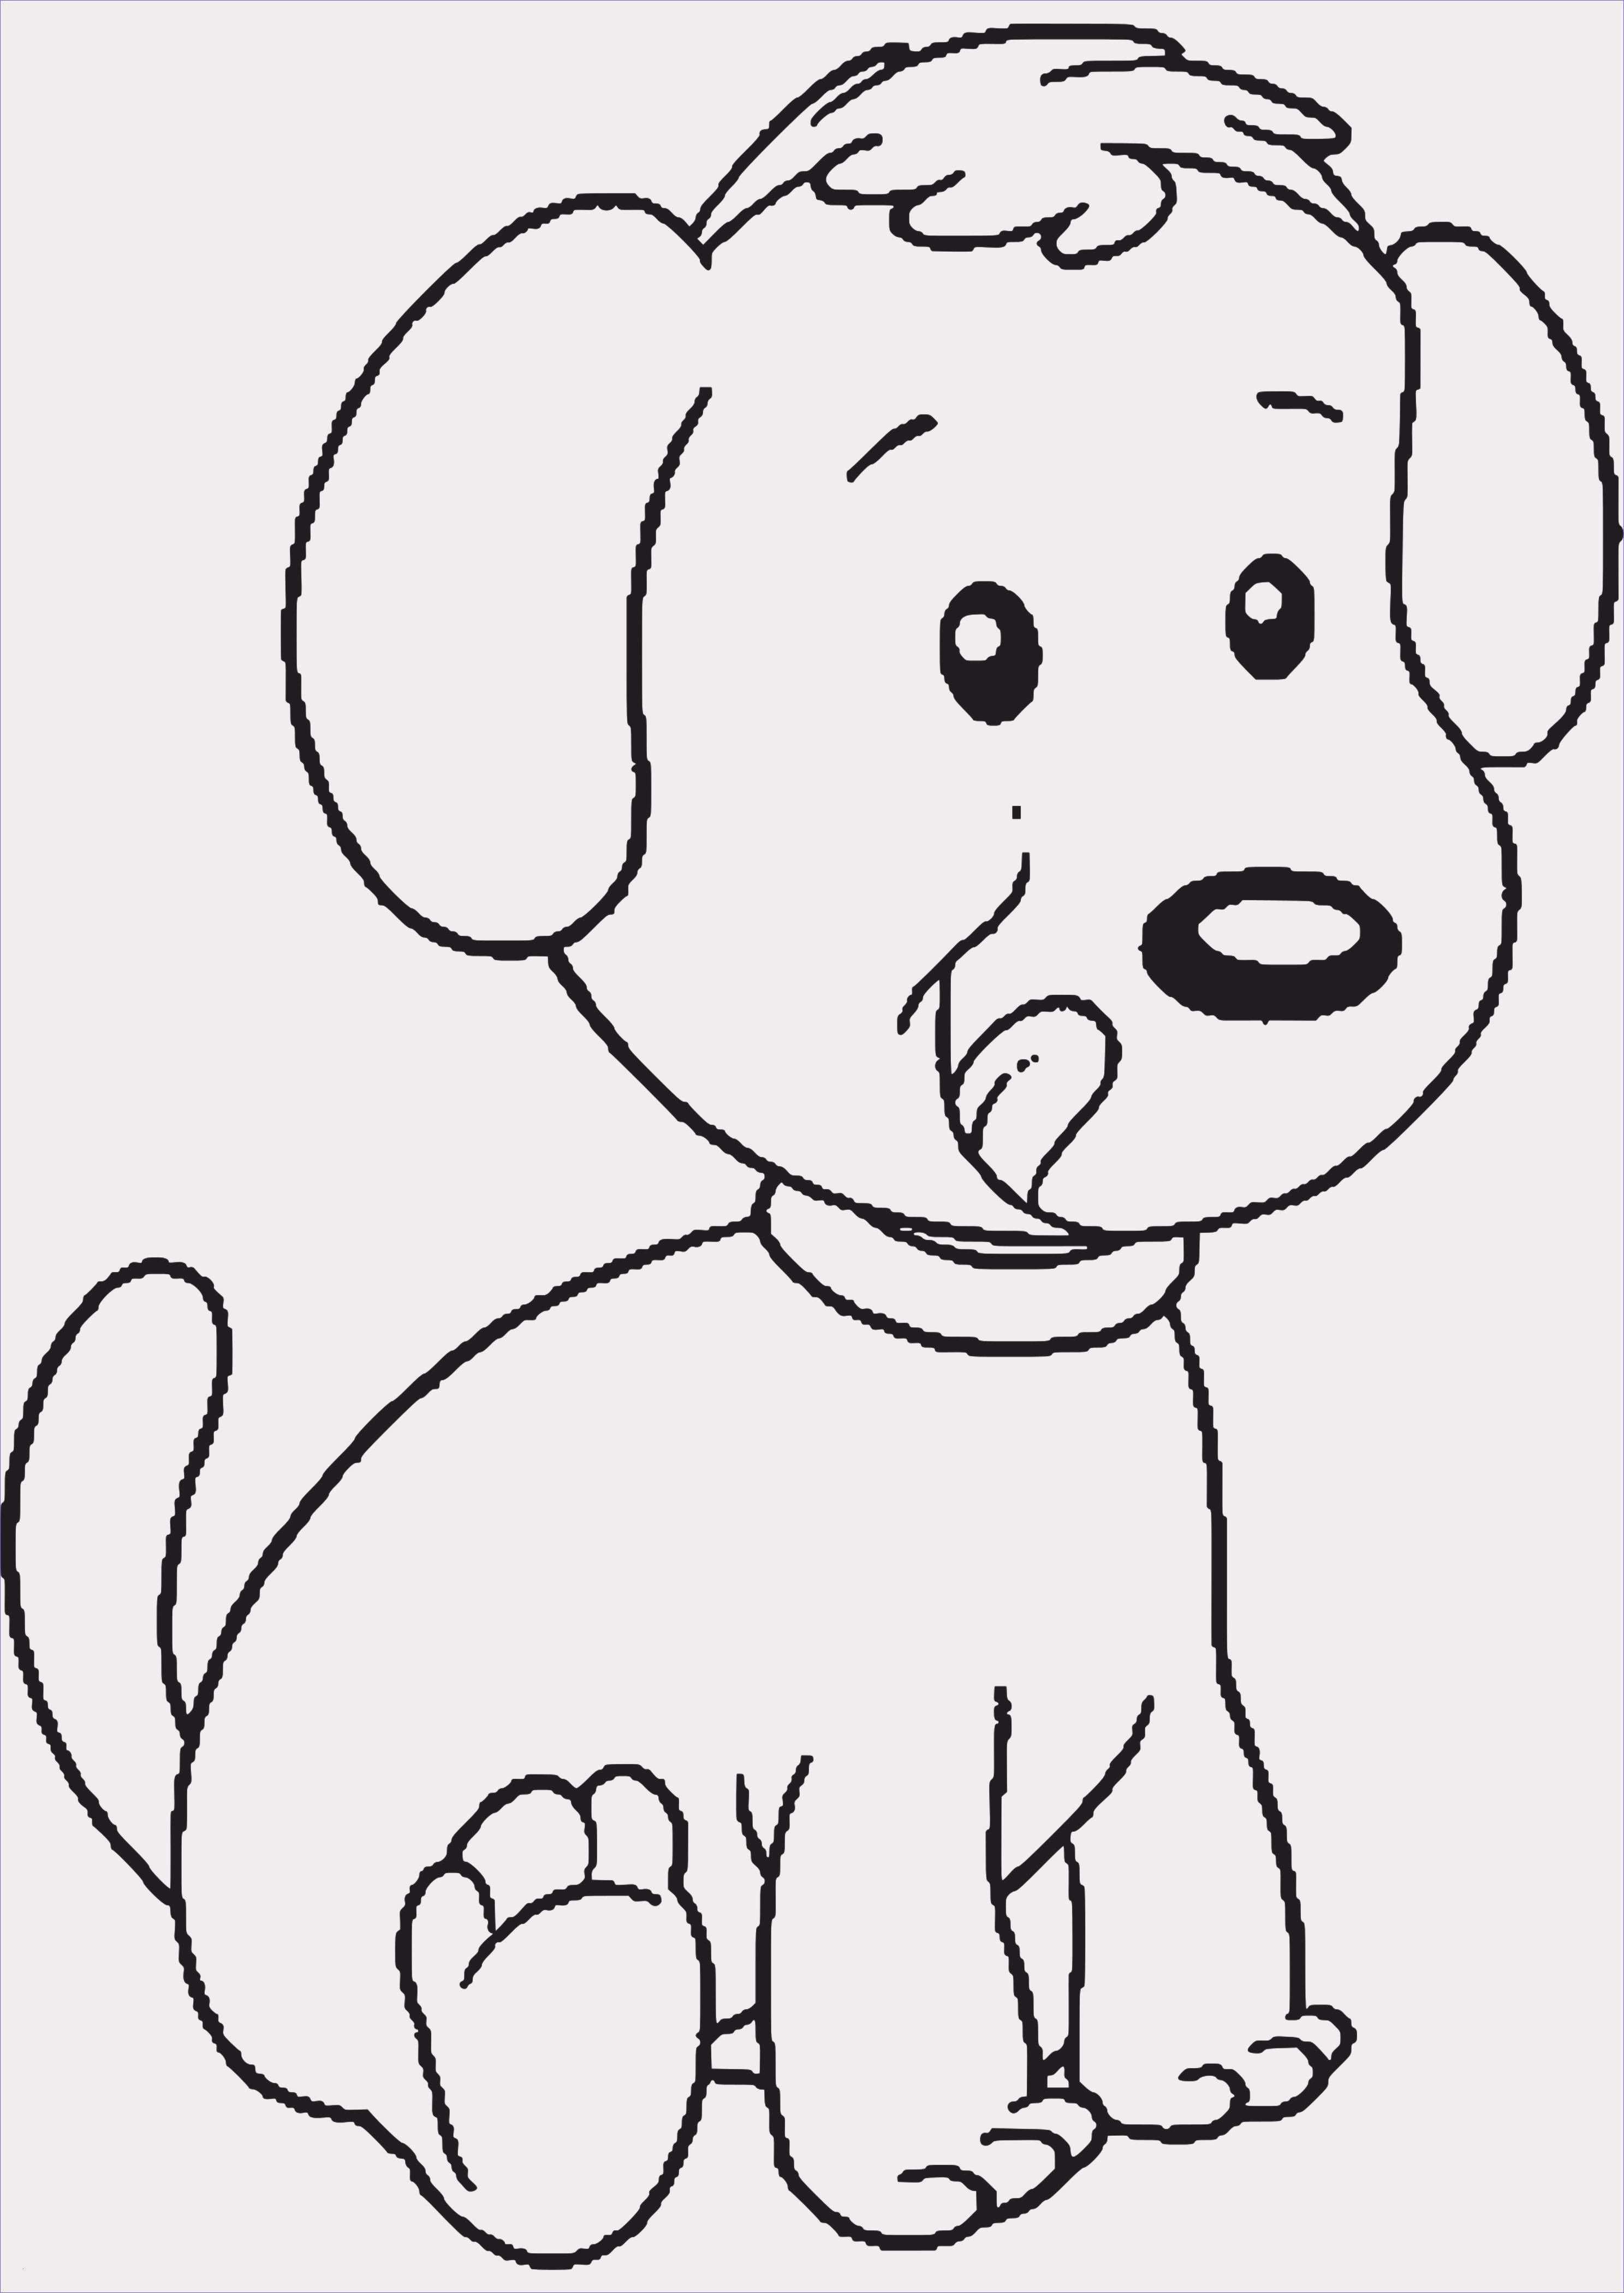 Eulen Bilder Zum Ausdrucken Eulen Vorlage Zum Ausdrucken Beratung Pin Von Liliana Sepulveda Auf Dog Coloring Page Puppy Coloring Pages Animal Coloring Pages